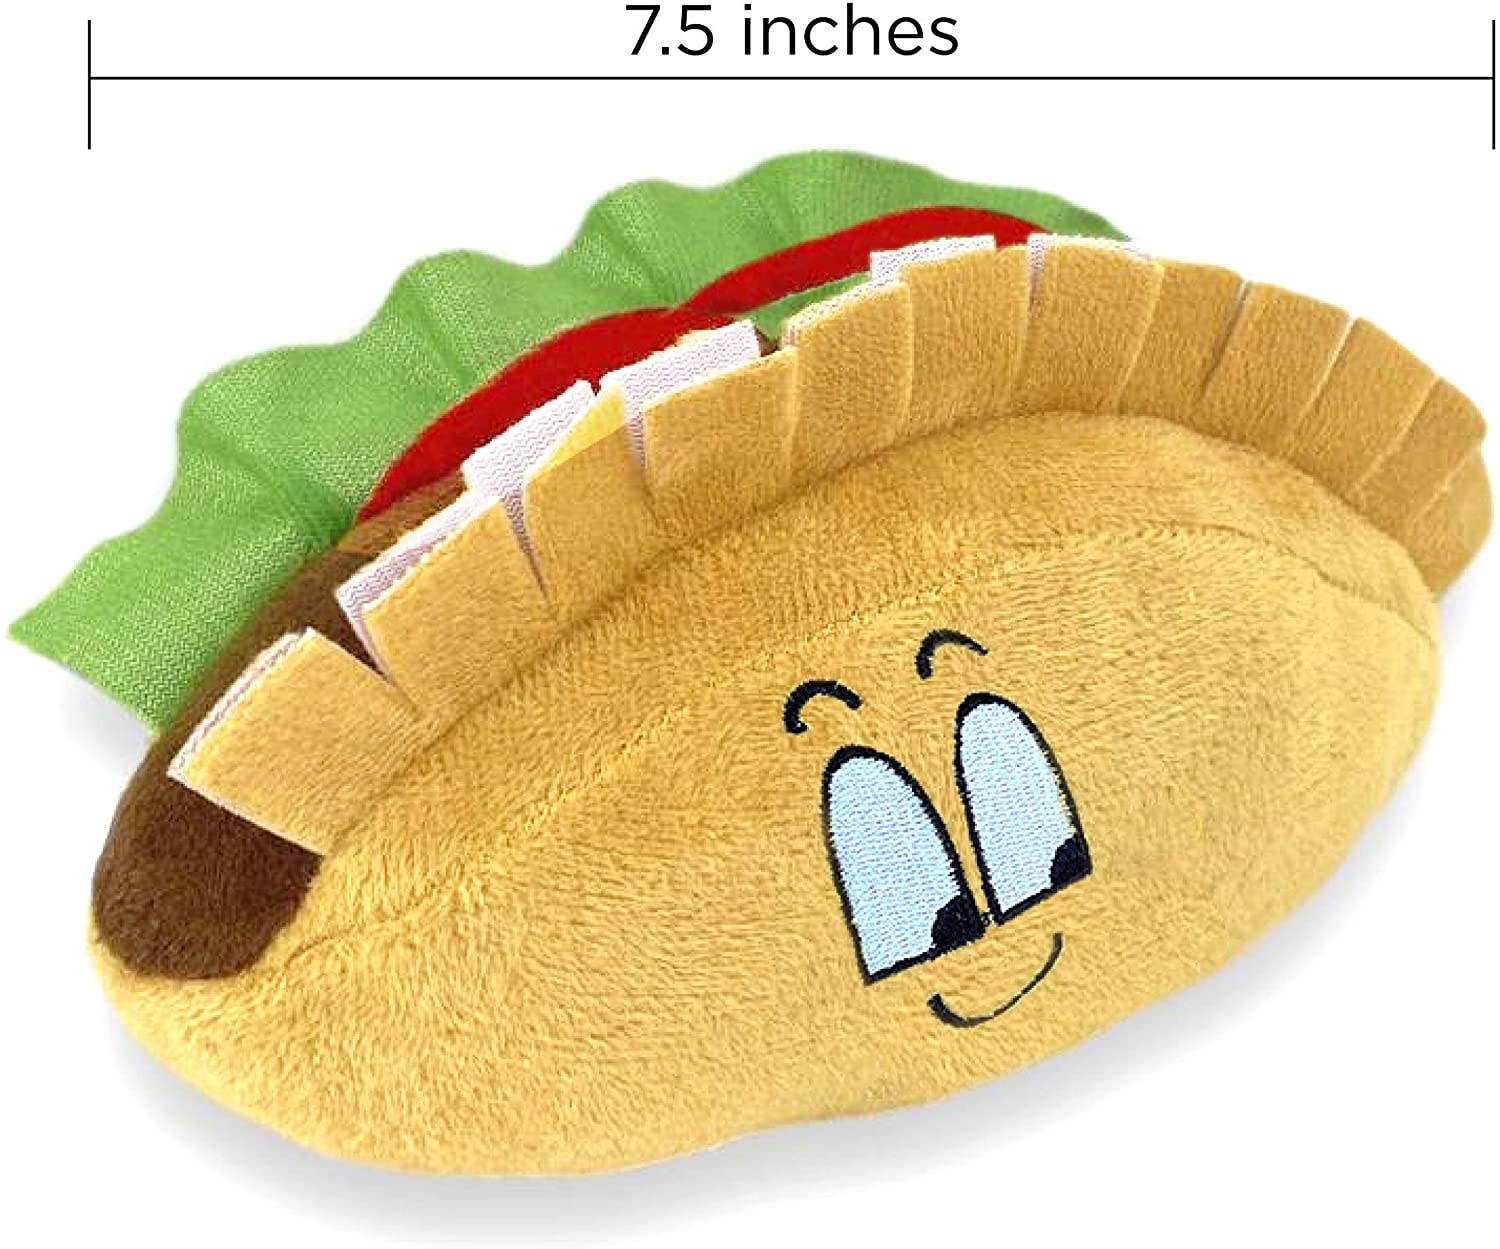 Taco Plush Toy